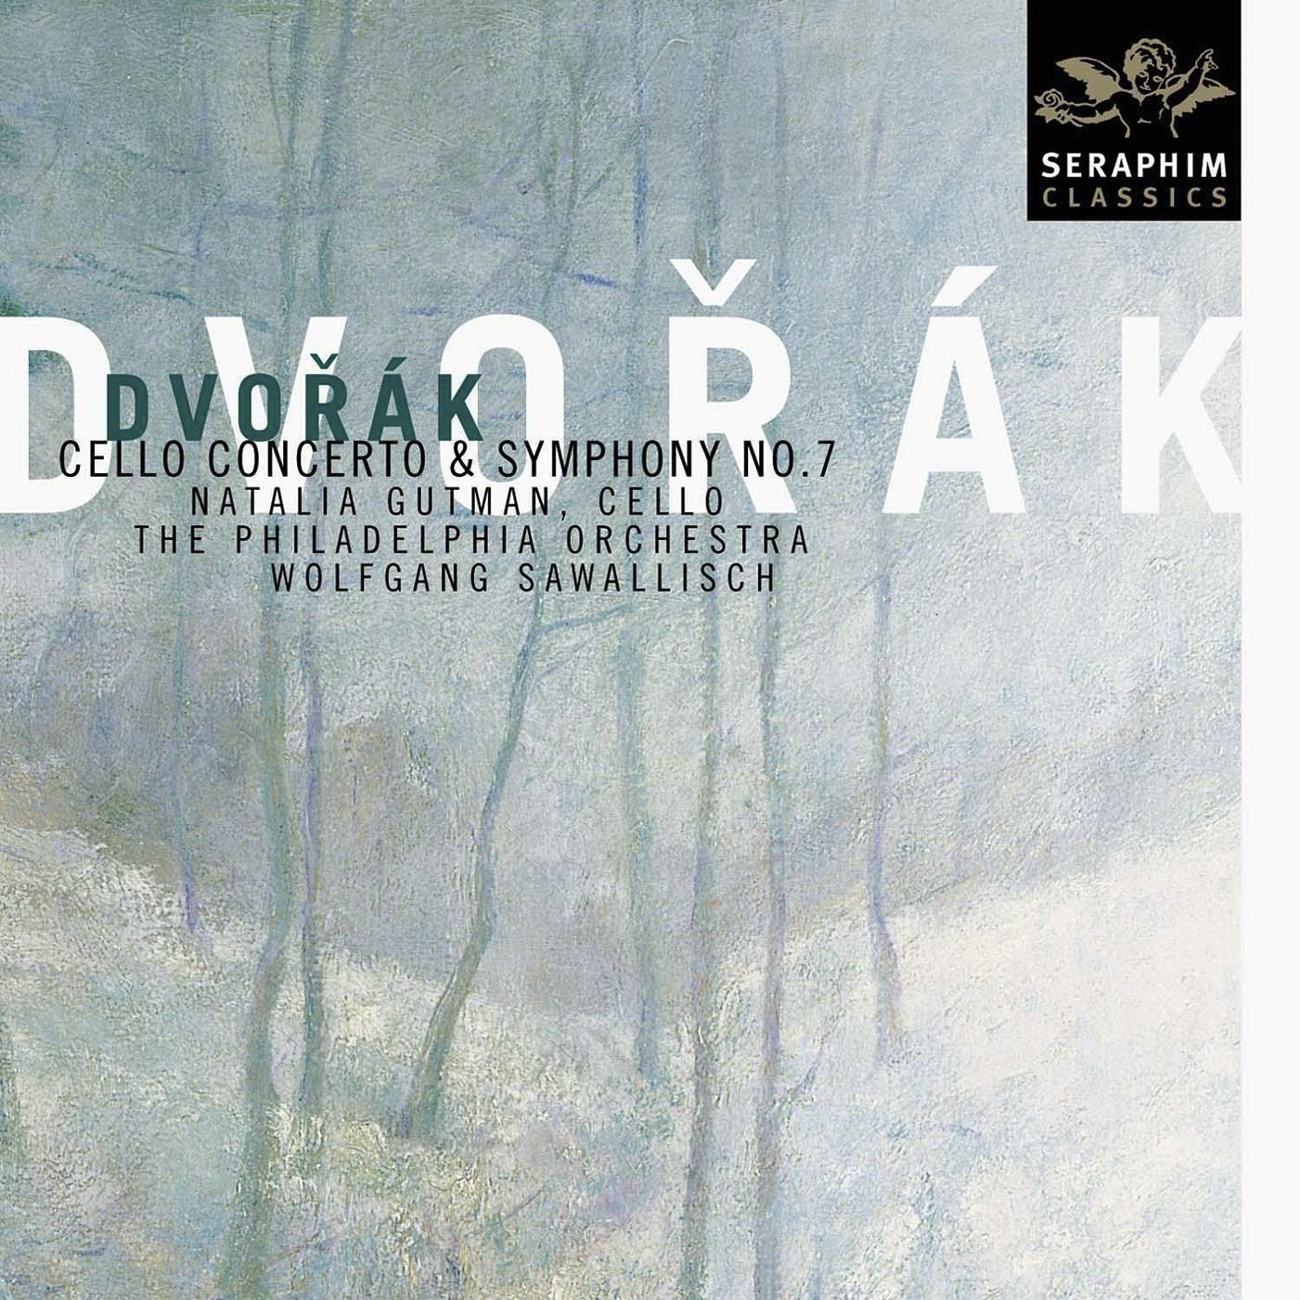 Dvorak: Cello Concerto & Symphony No. 7